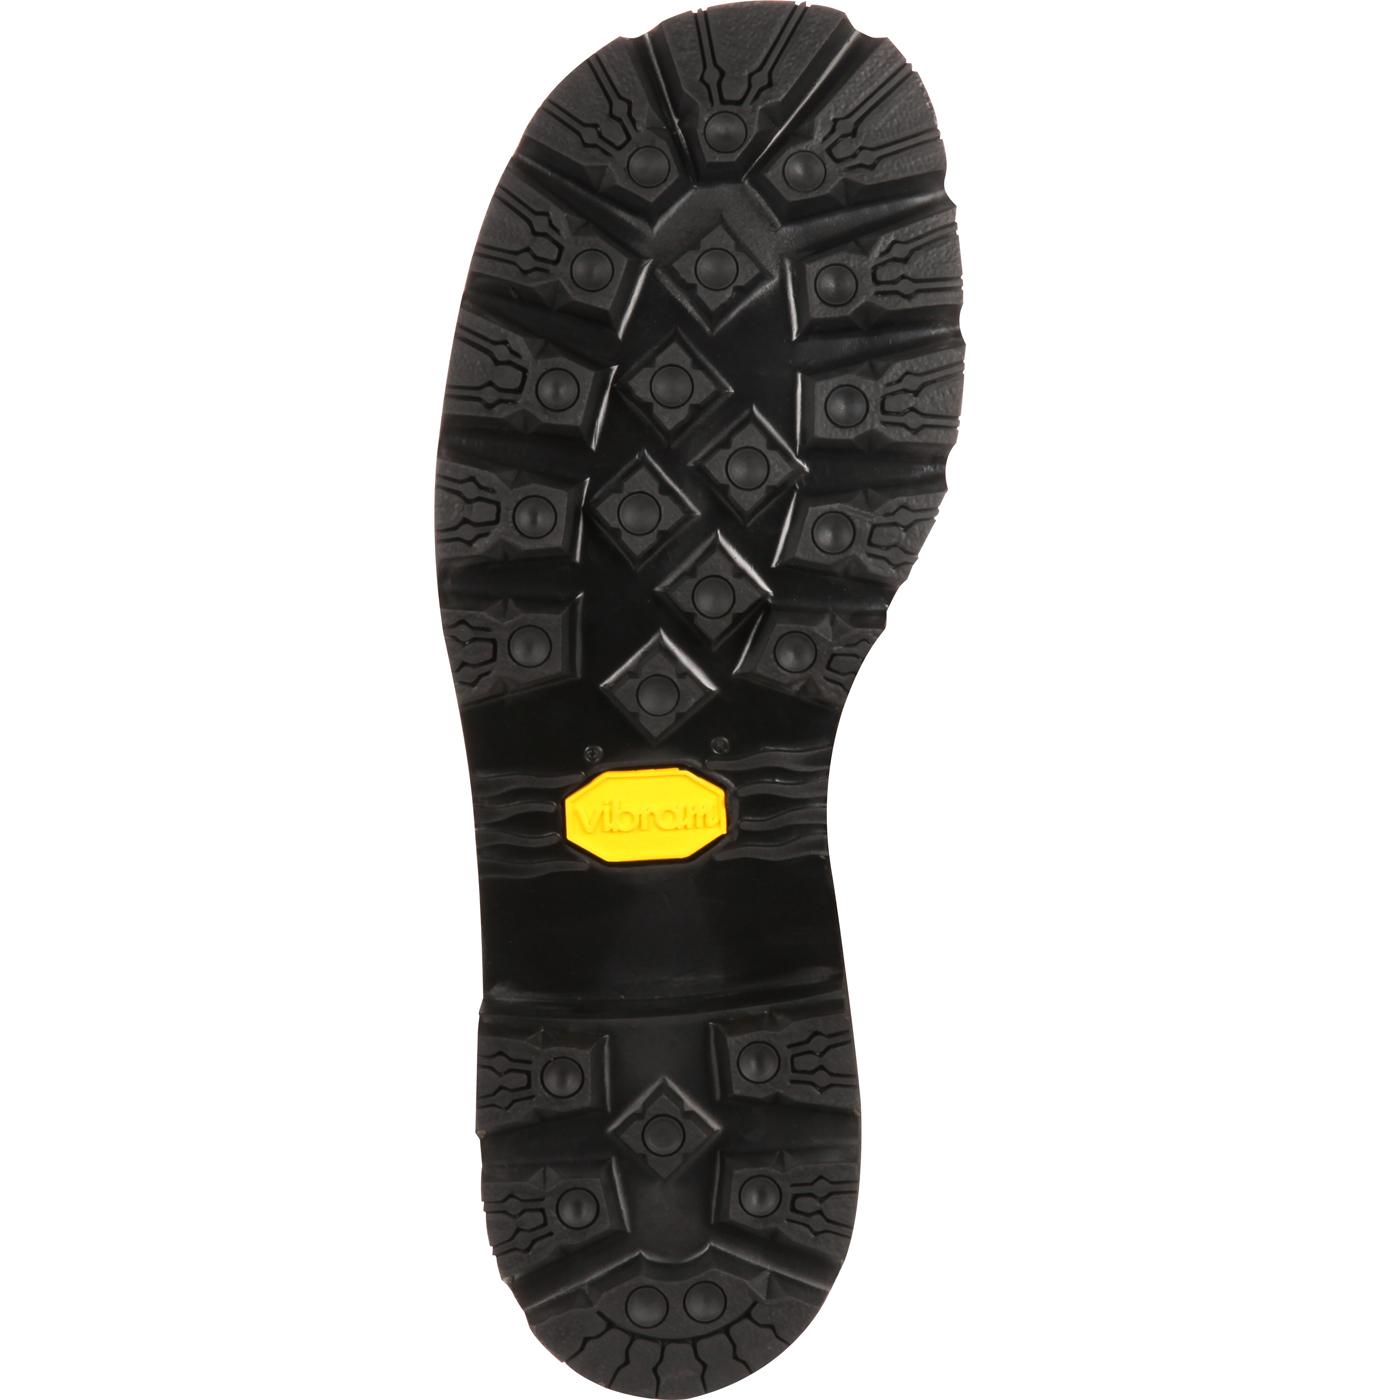 Vintage Oblique-Toe Hiker, Rocky Boots Original, #RKS0222